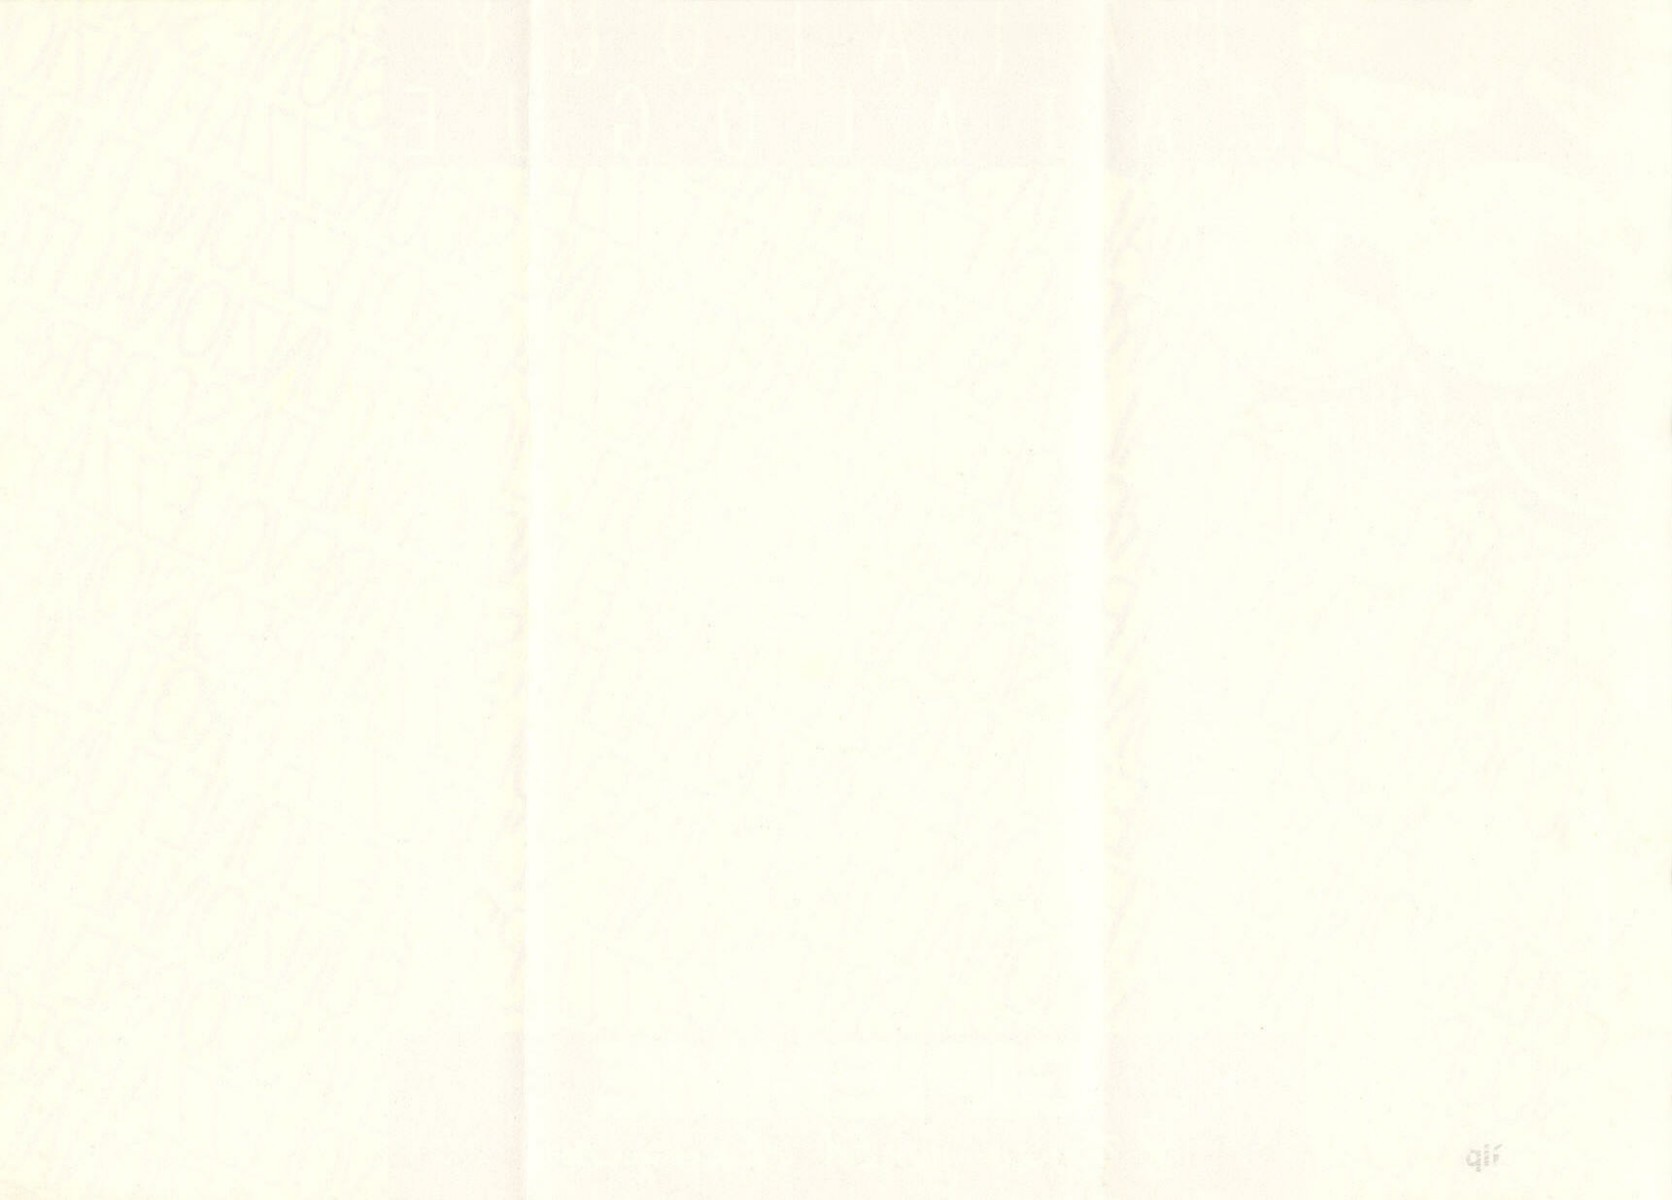 Gipiemme catalog (1982)